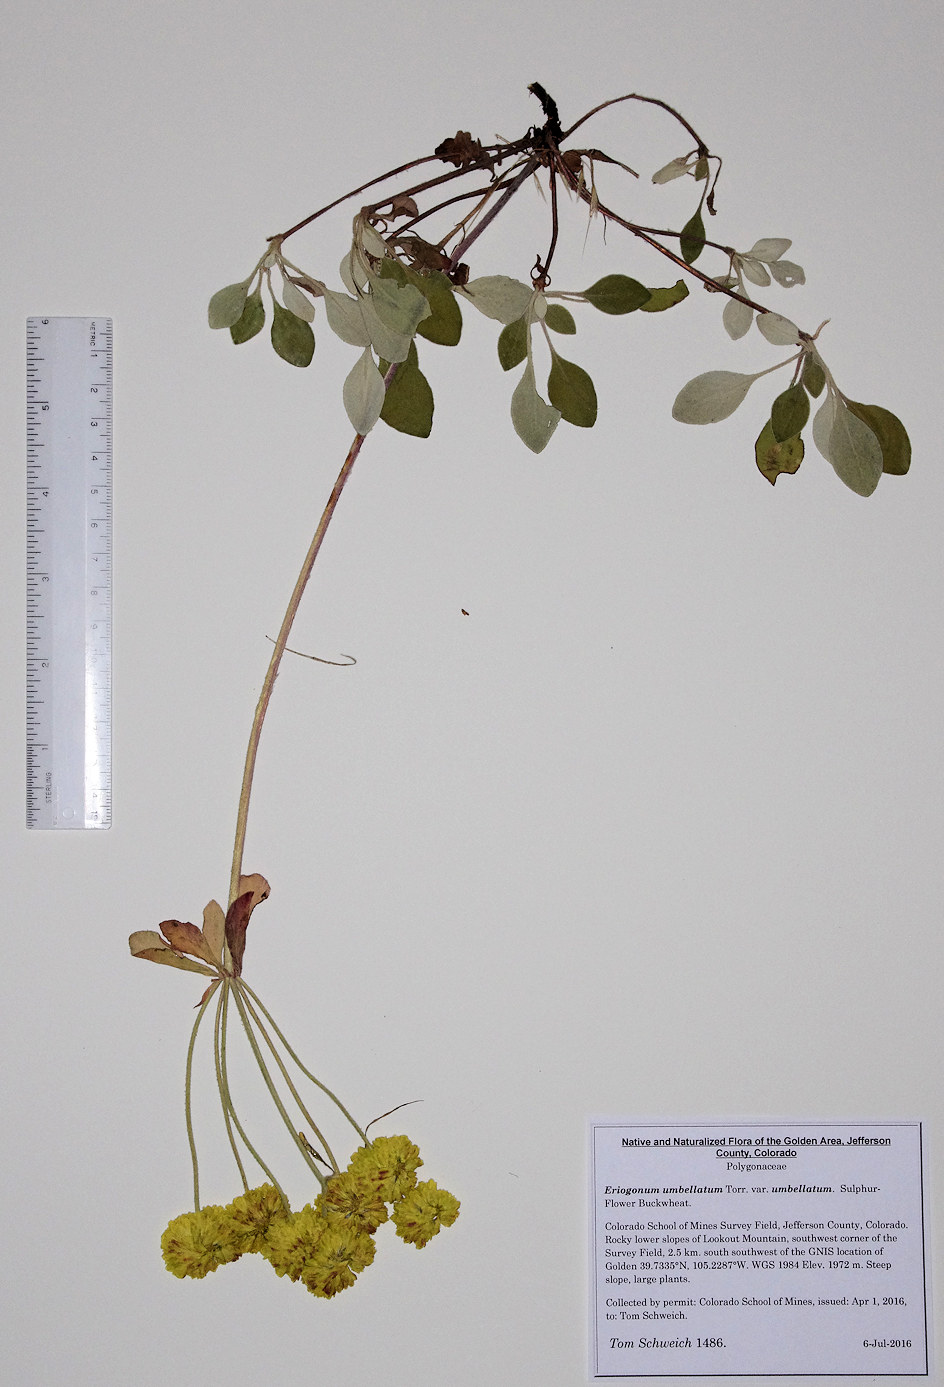 Polygonaceae Eriogonum umbellatum umbellatum